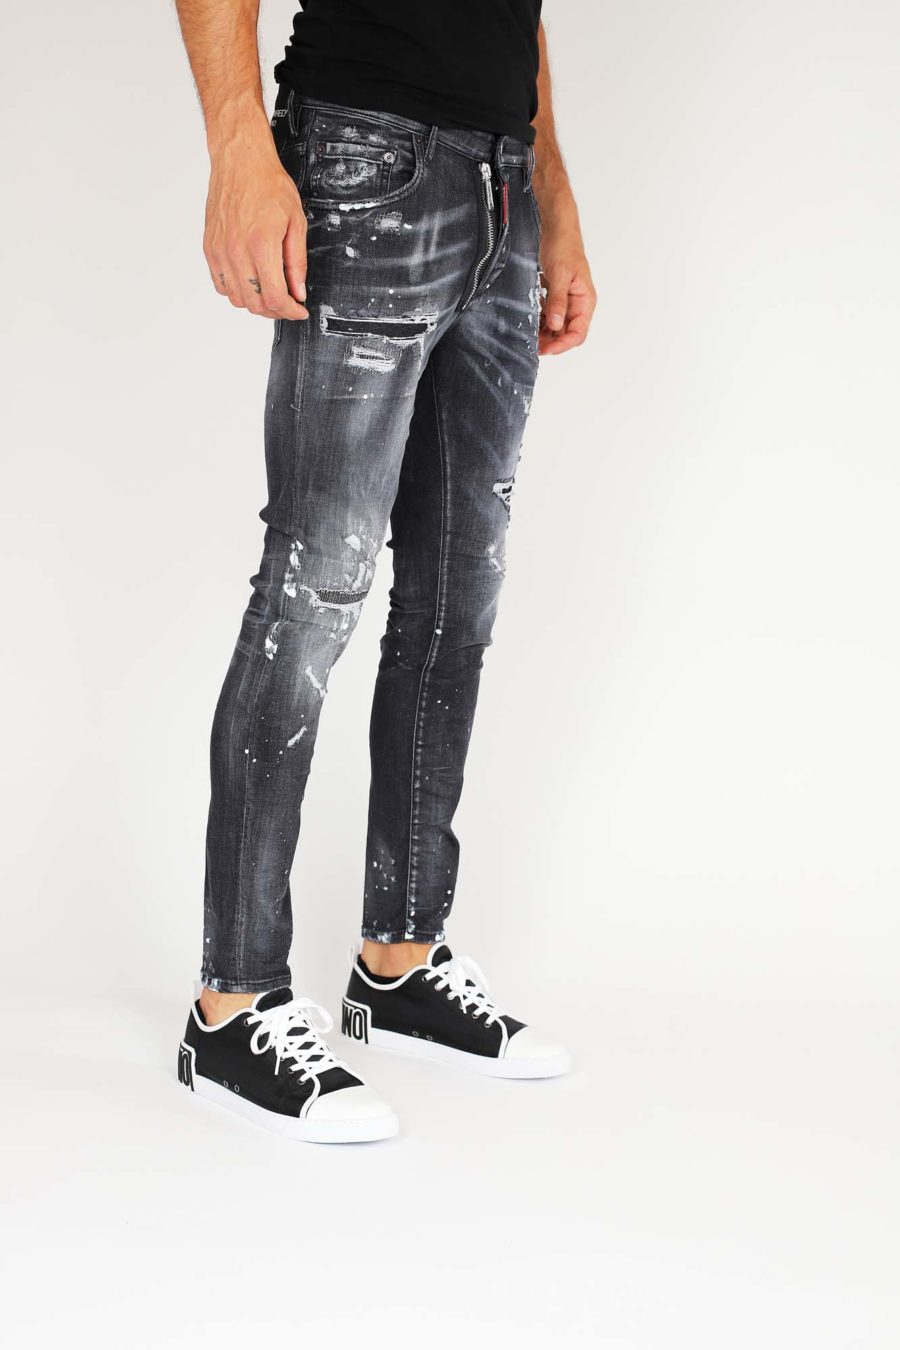 Jeans "Super Twinky Jean" con cremallera - IMG 9859